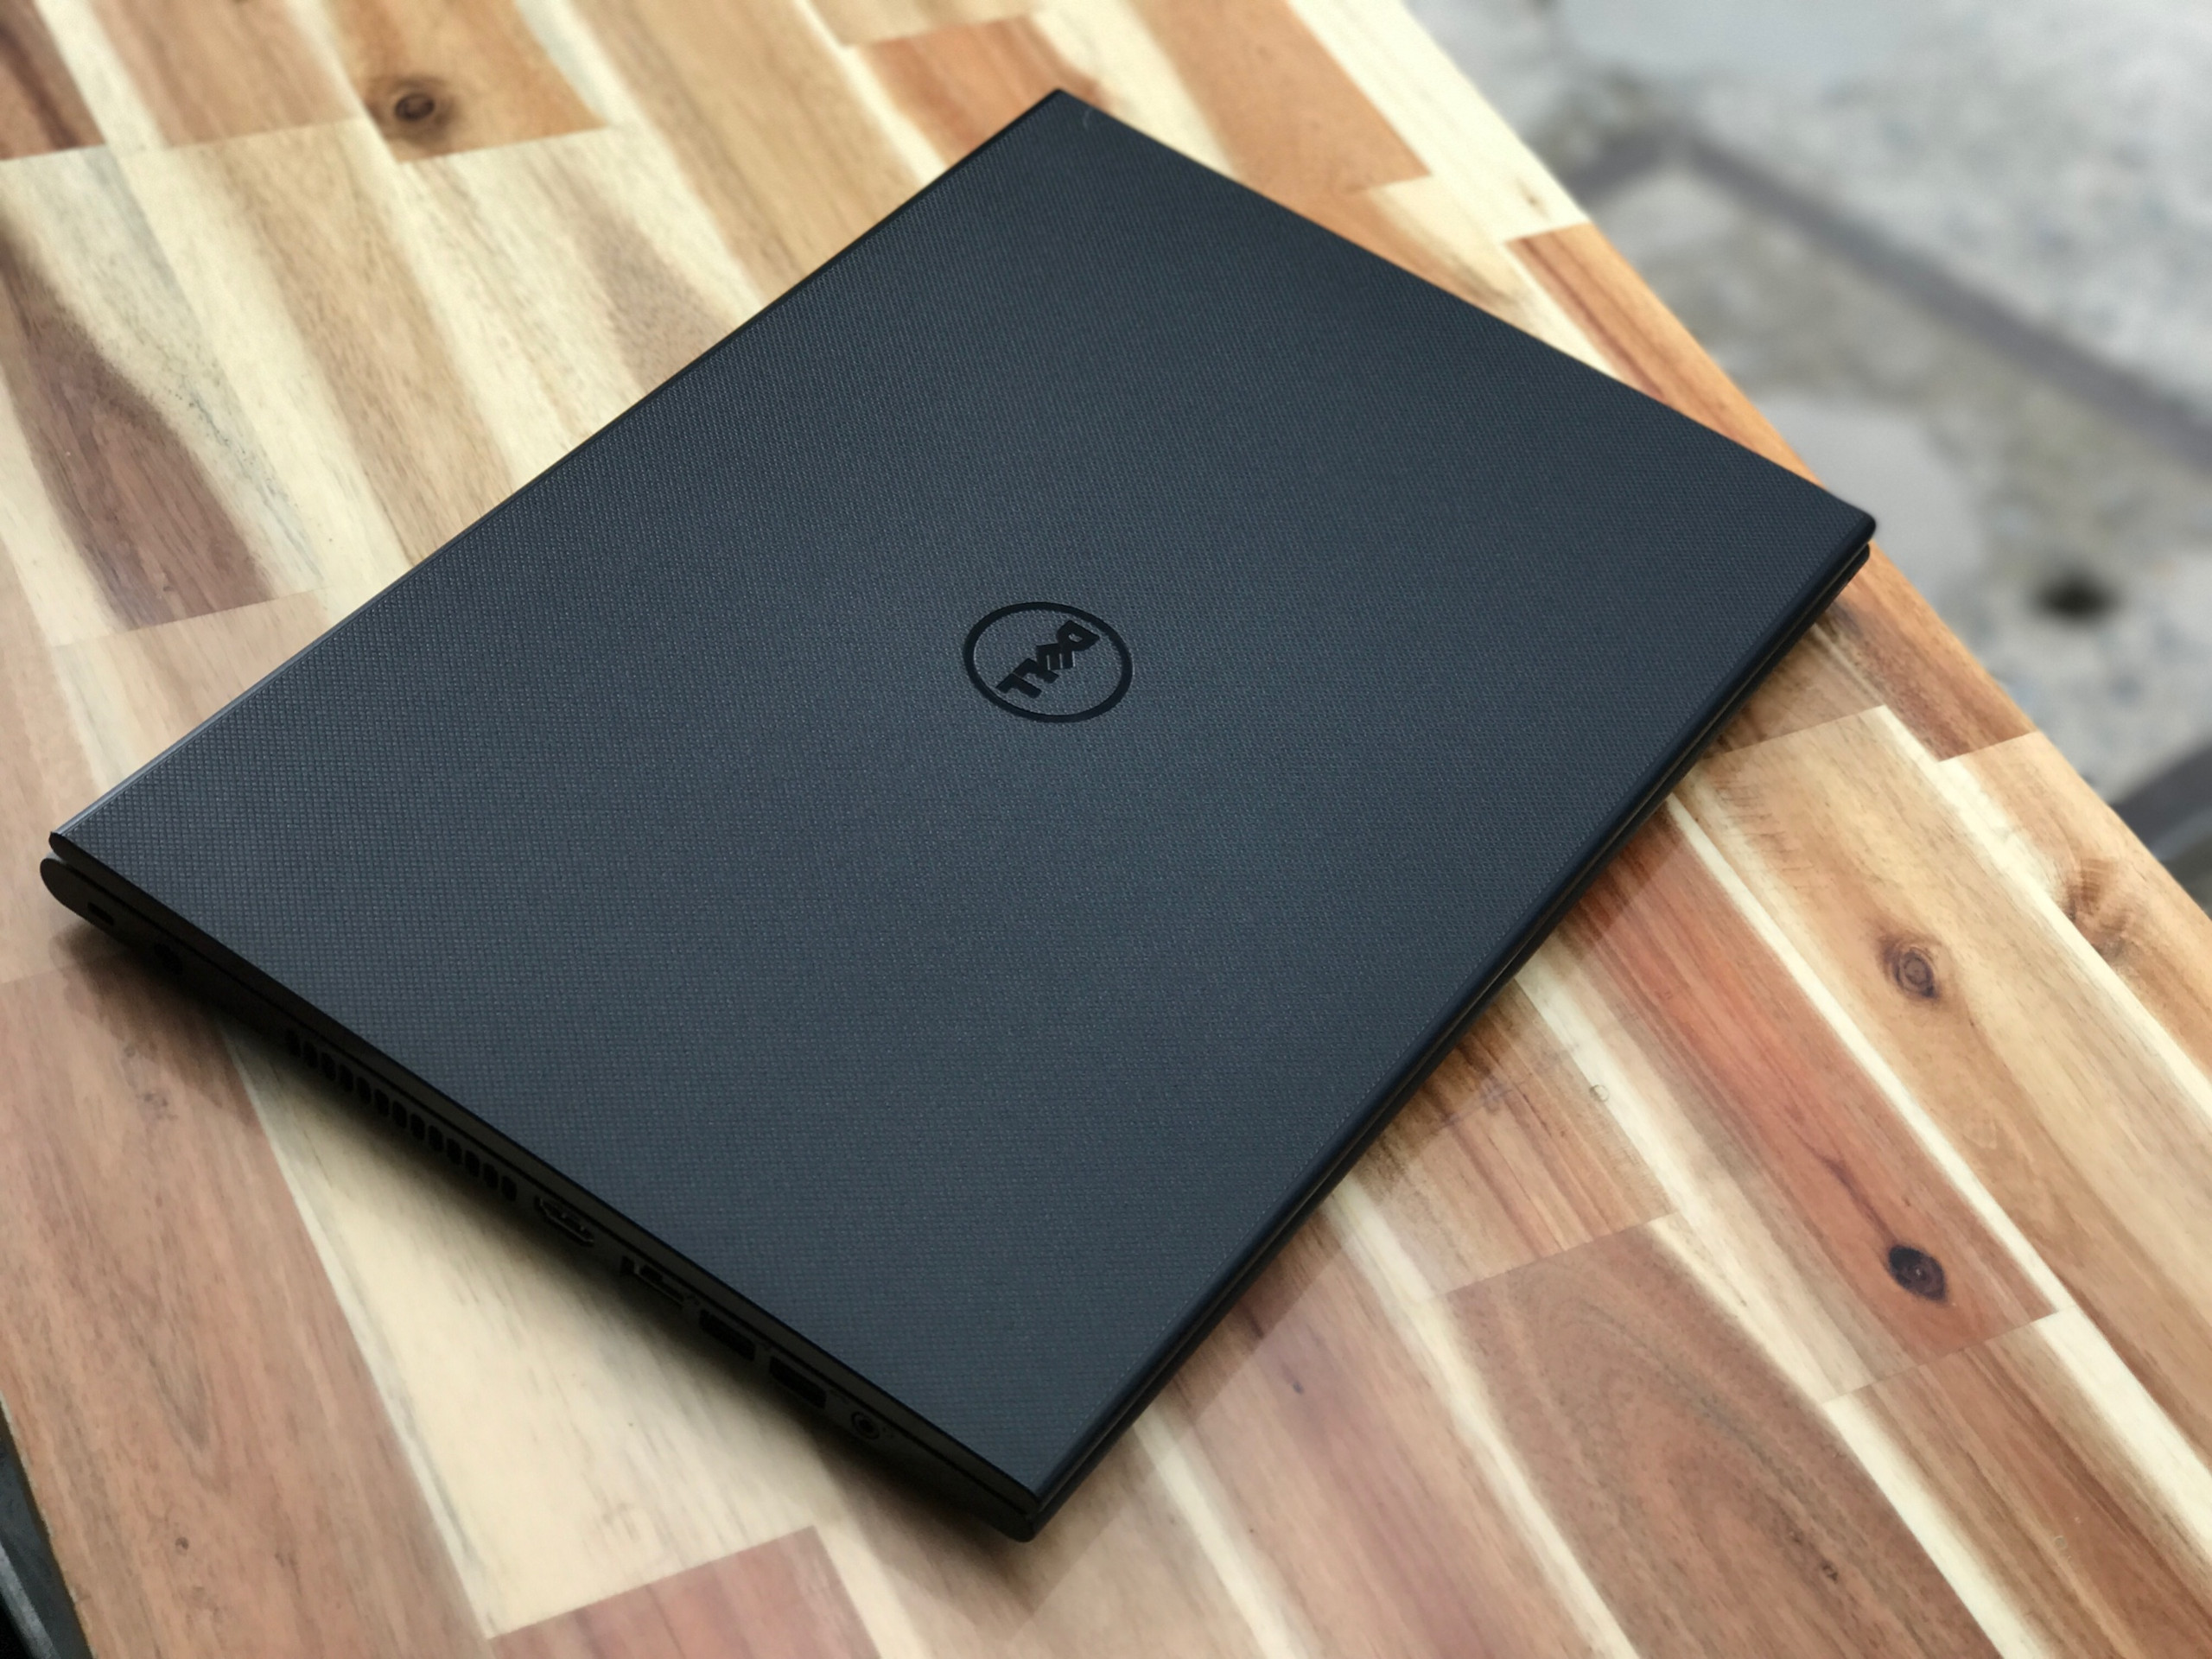 Laptop Dell Inspiron 3542, i3 4005U 4G 500G Vga Nvidia GT820M  đẹp zin 100% Giá rẻ1